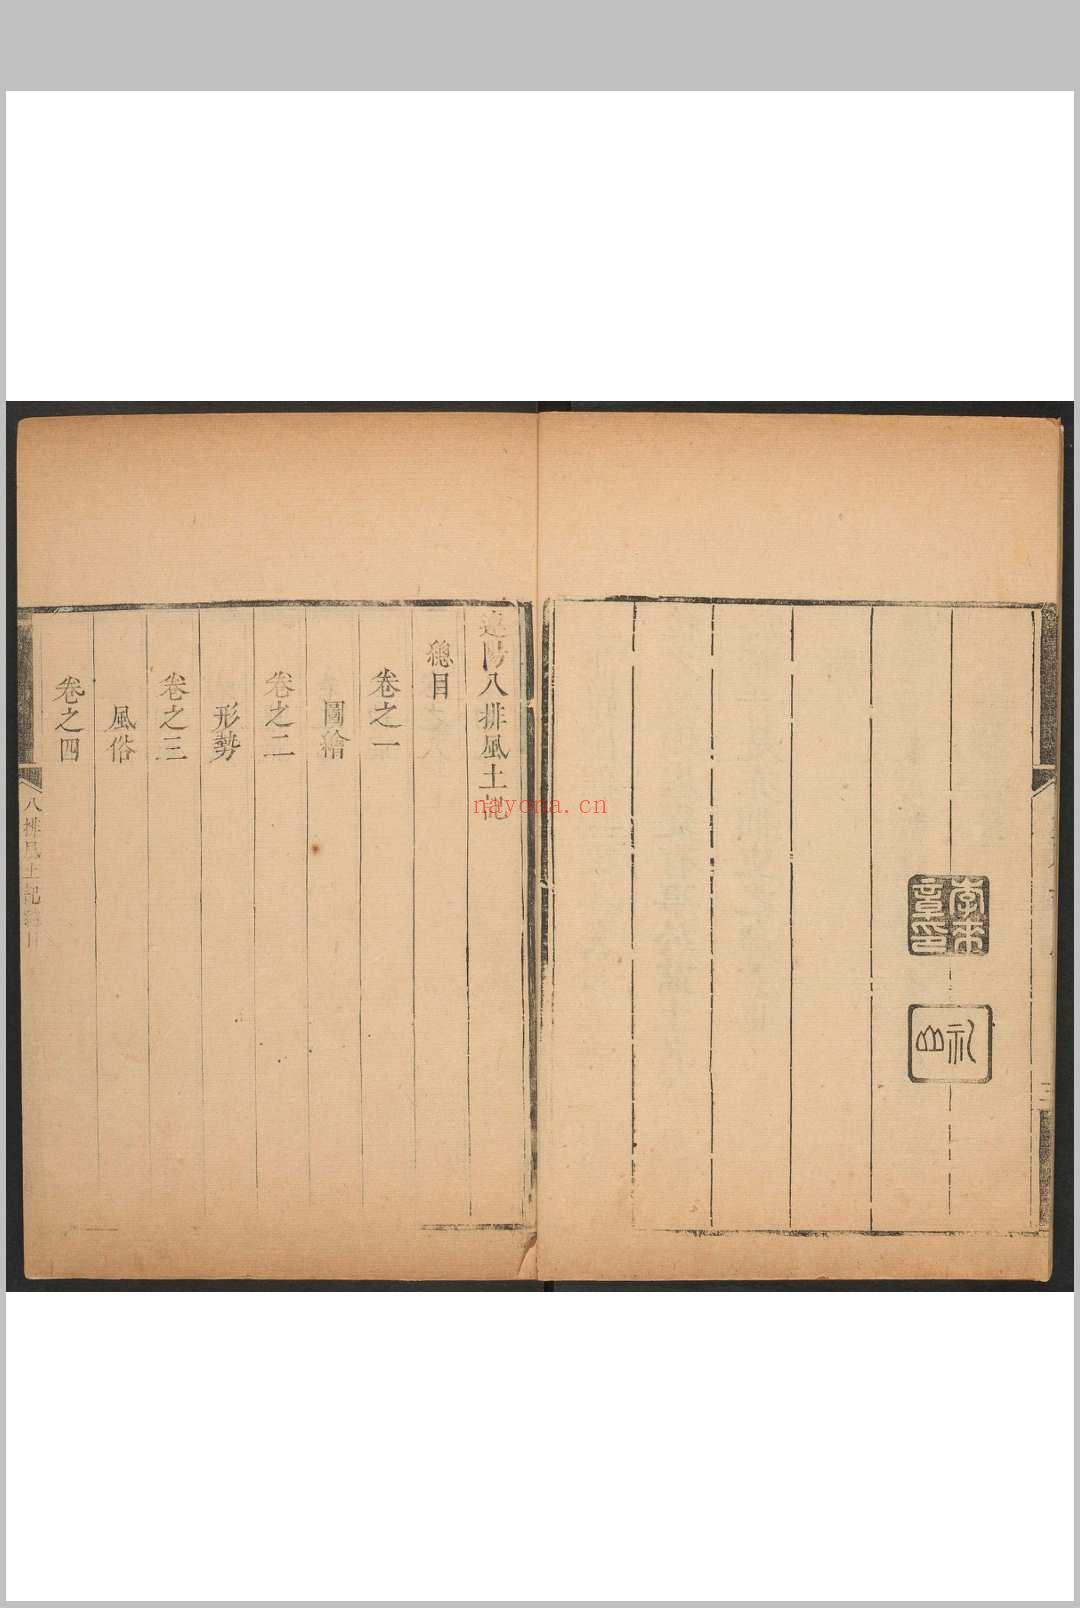 连阳八排风土记  [8卷] 李来章撰 连山书院, 康熙47年